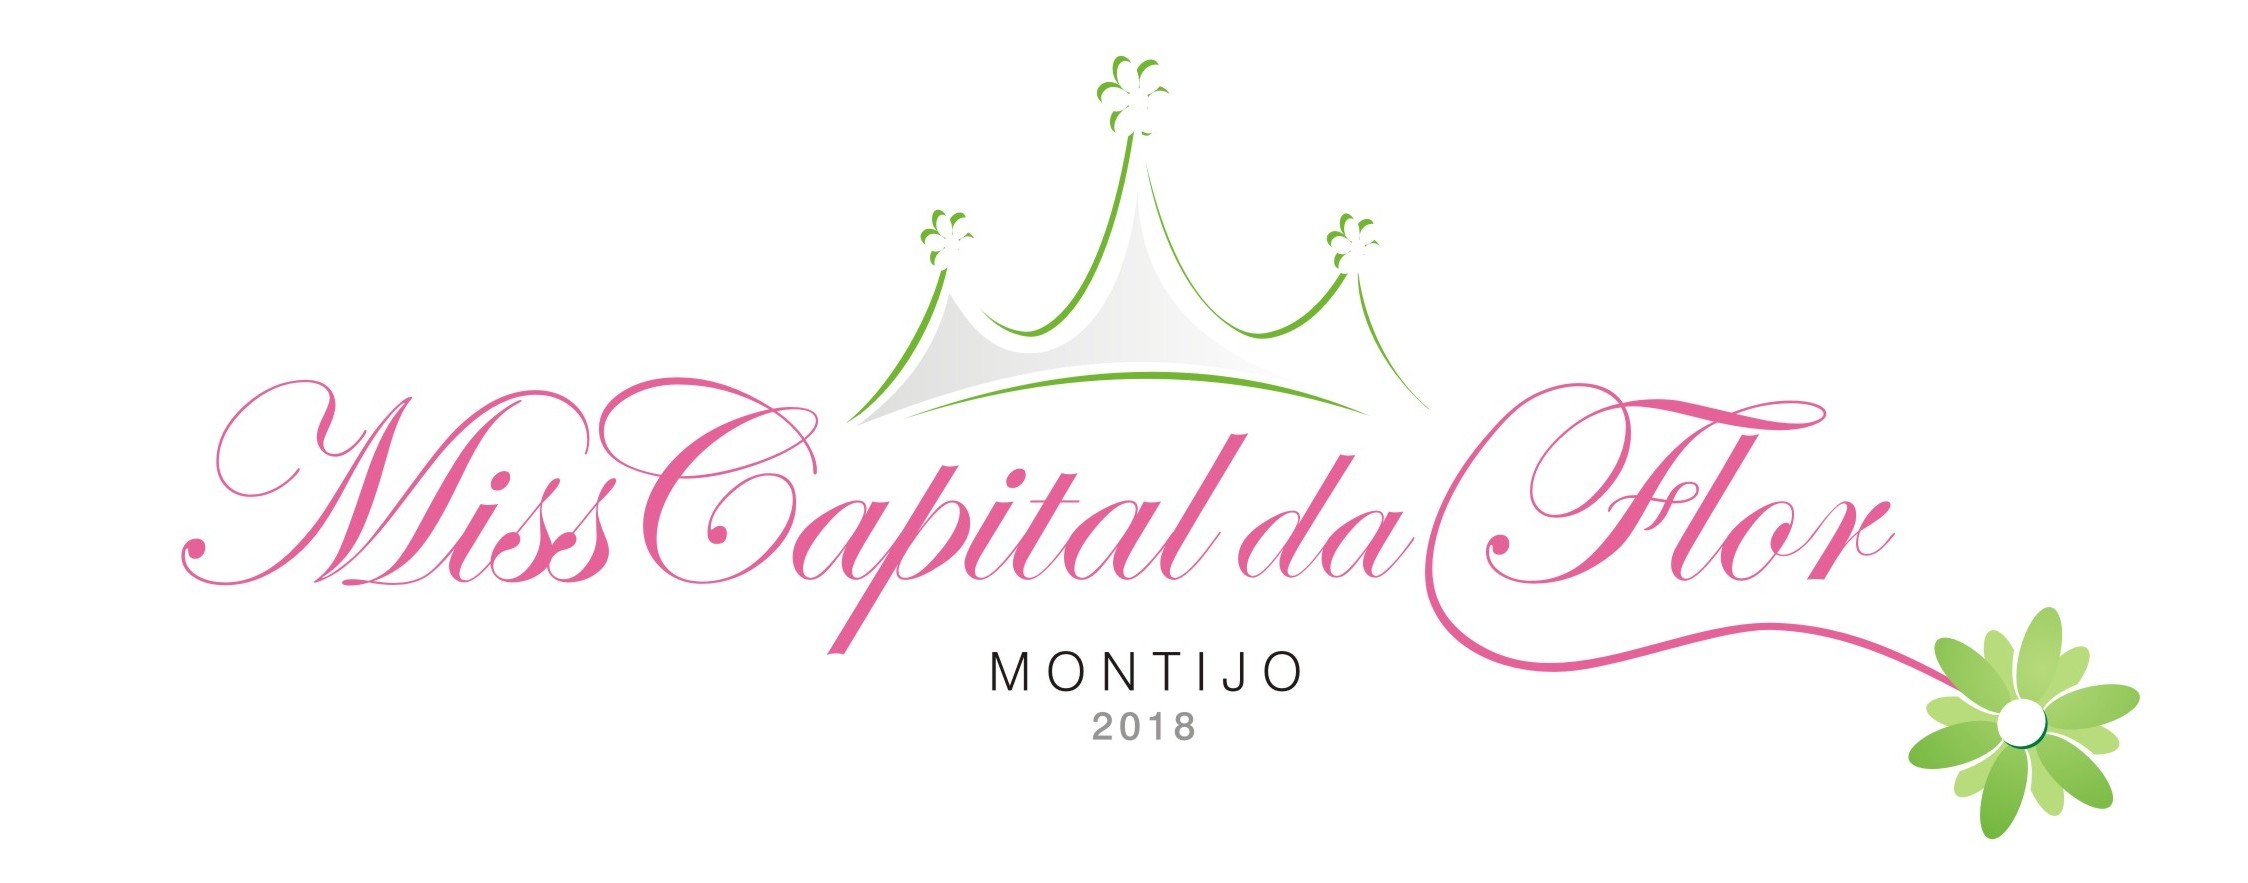 Miss Capital da Flor